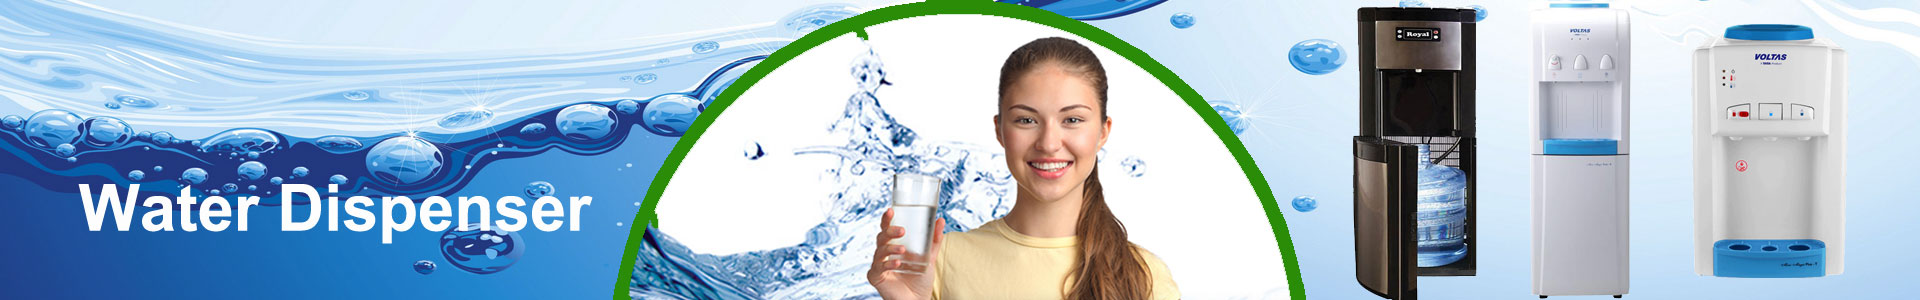 Water dispenser repair service Nagpur-My Aqua